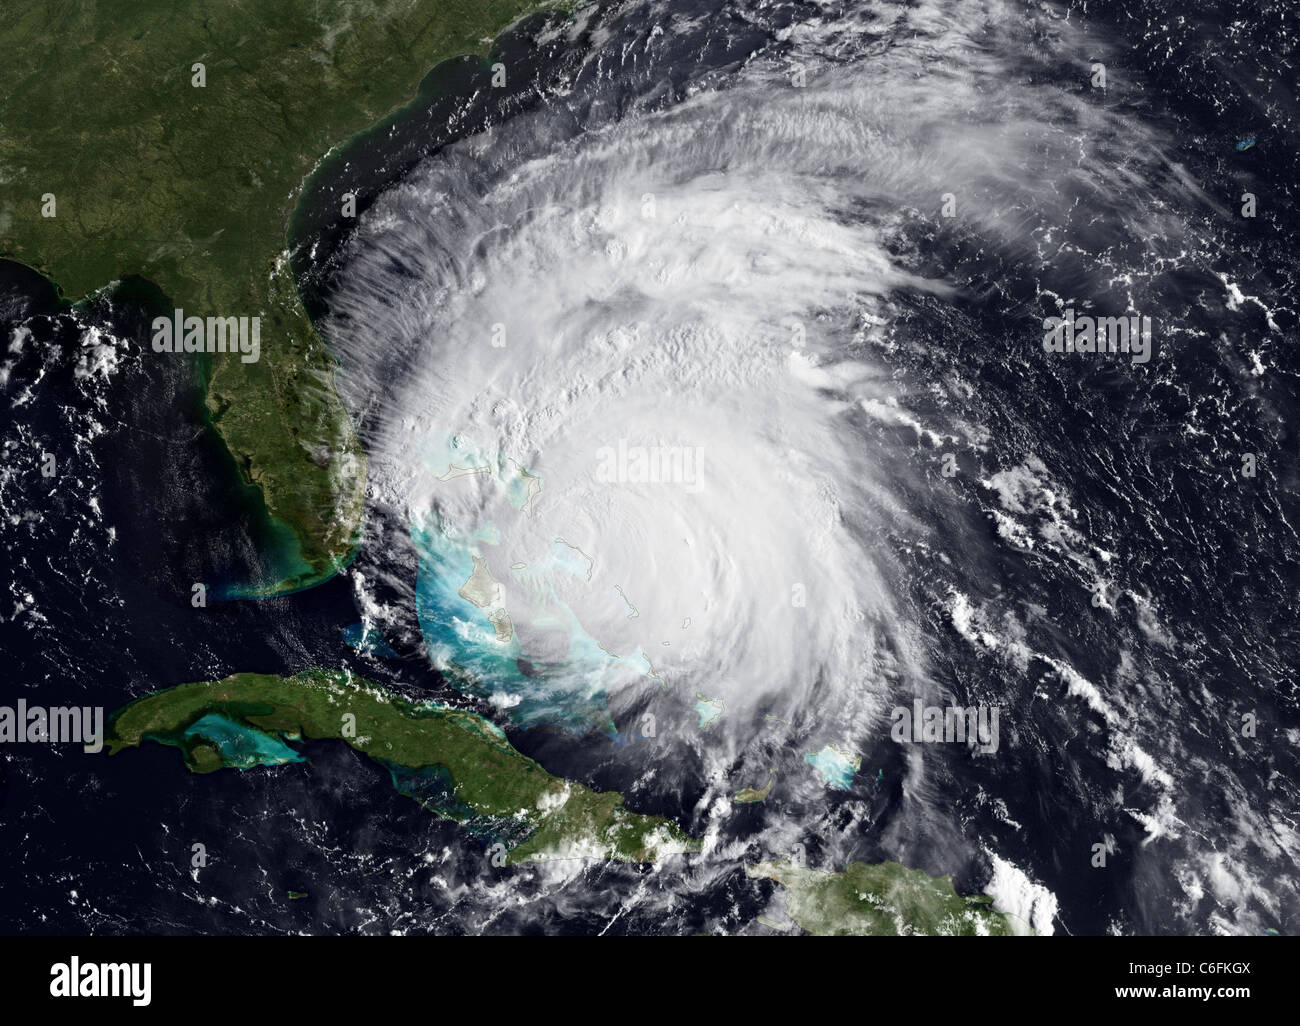 L'ouragan Irene - mise à jour le 25 août 2011, Irène est toujours l'emballage d'un poinçon avec 115 mph vents. Bien que l'œil a disparu de cette noaa goes-est l'imagerie par satellite (prise le 25 août 2011 à 1215z), l'orage n'est pas affaiblir. irene semble passer par un œil cycle de remplacement. le National Hurricane Center est encore prédire irene pour atteindre la catégorie 4 Statut au sein de la prochaine journée. L'ouragan et la tempête tropicale montres sont en vigueur pour une bonne partie de la côte de la Caroline. pour les plus récents de l'imagerie satellitaire et des animations, veuillez voir notre imagerie en temps réel page web. Banque D'Images